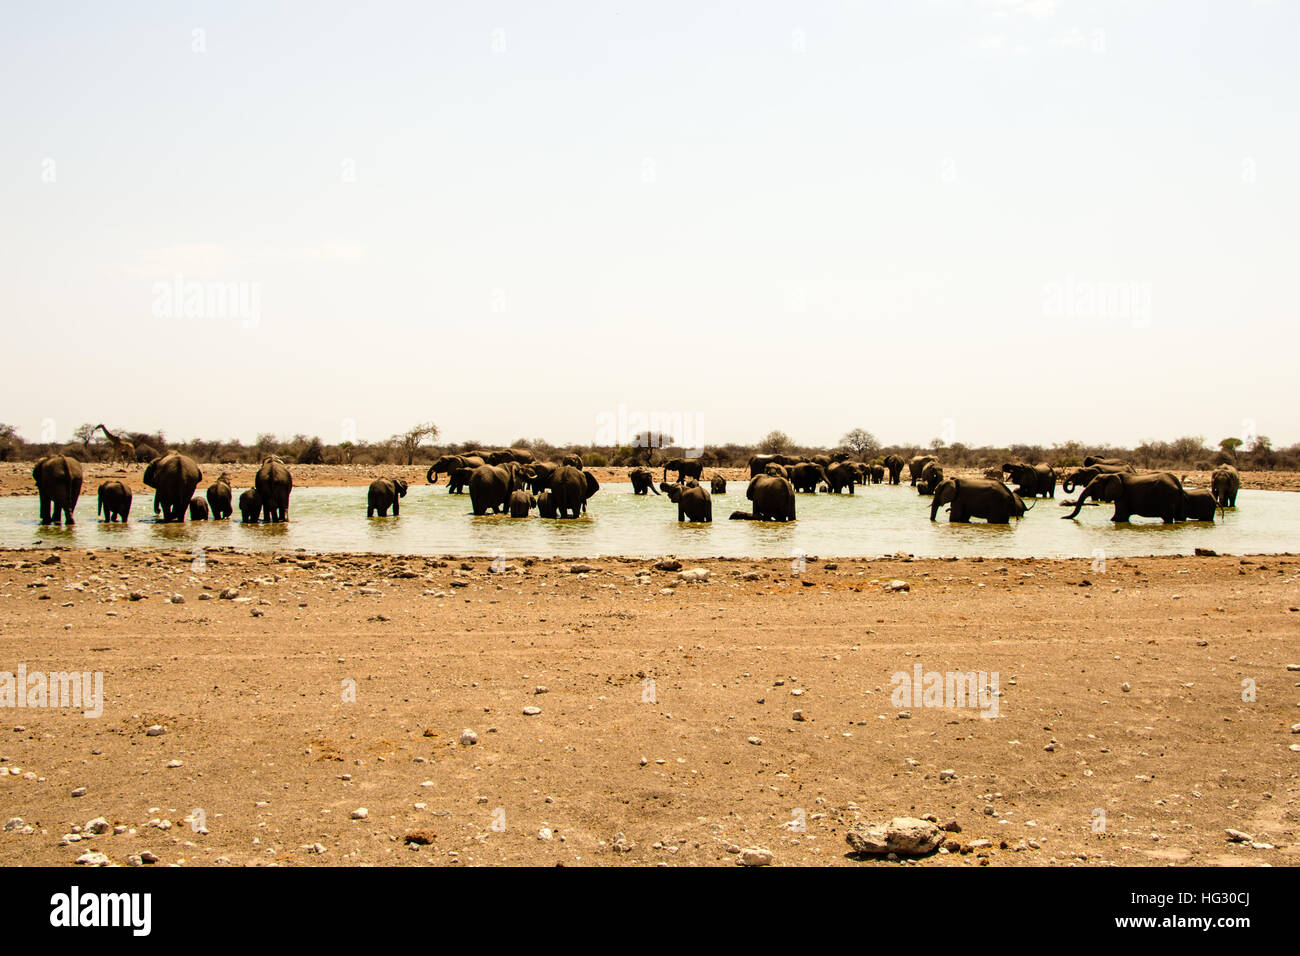 Herd of elephants enjoying the waterhole Stock Photo